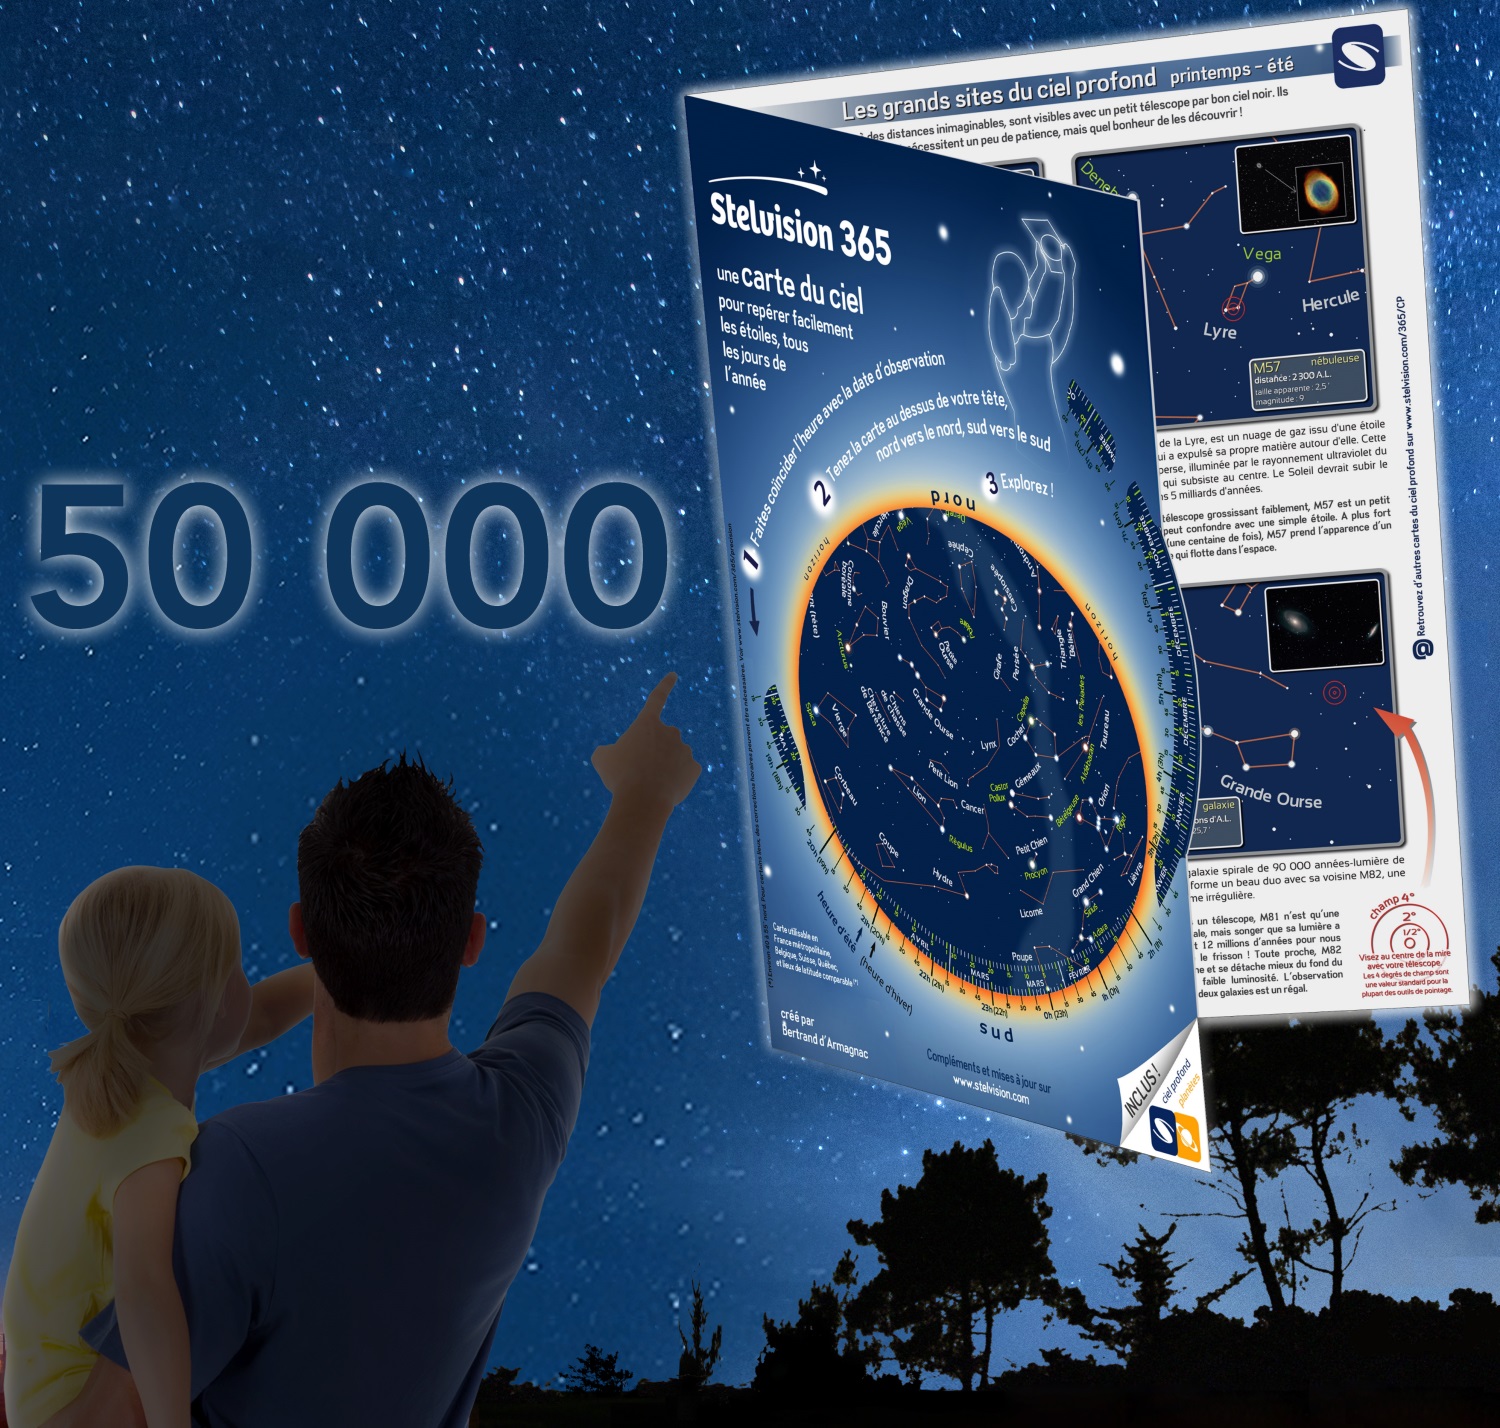 illustration carte du ciel Stelvision 365 vendue à 50 000 exemplaires